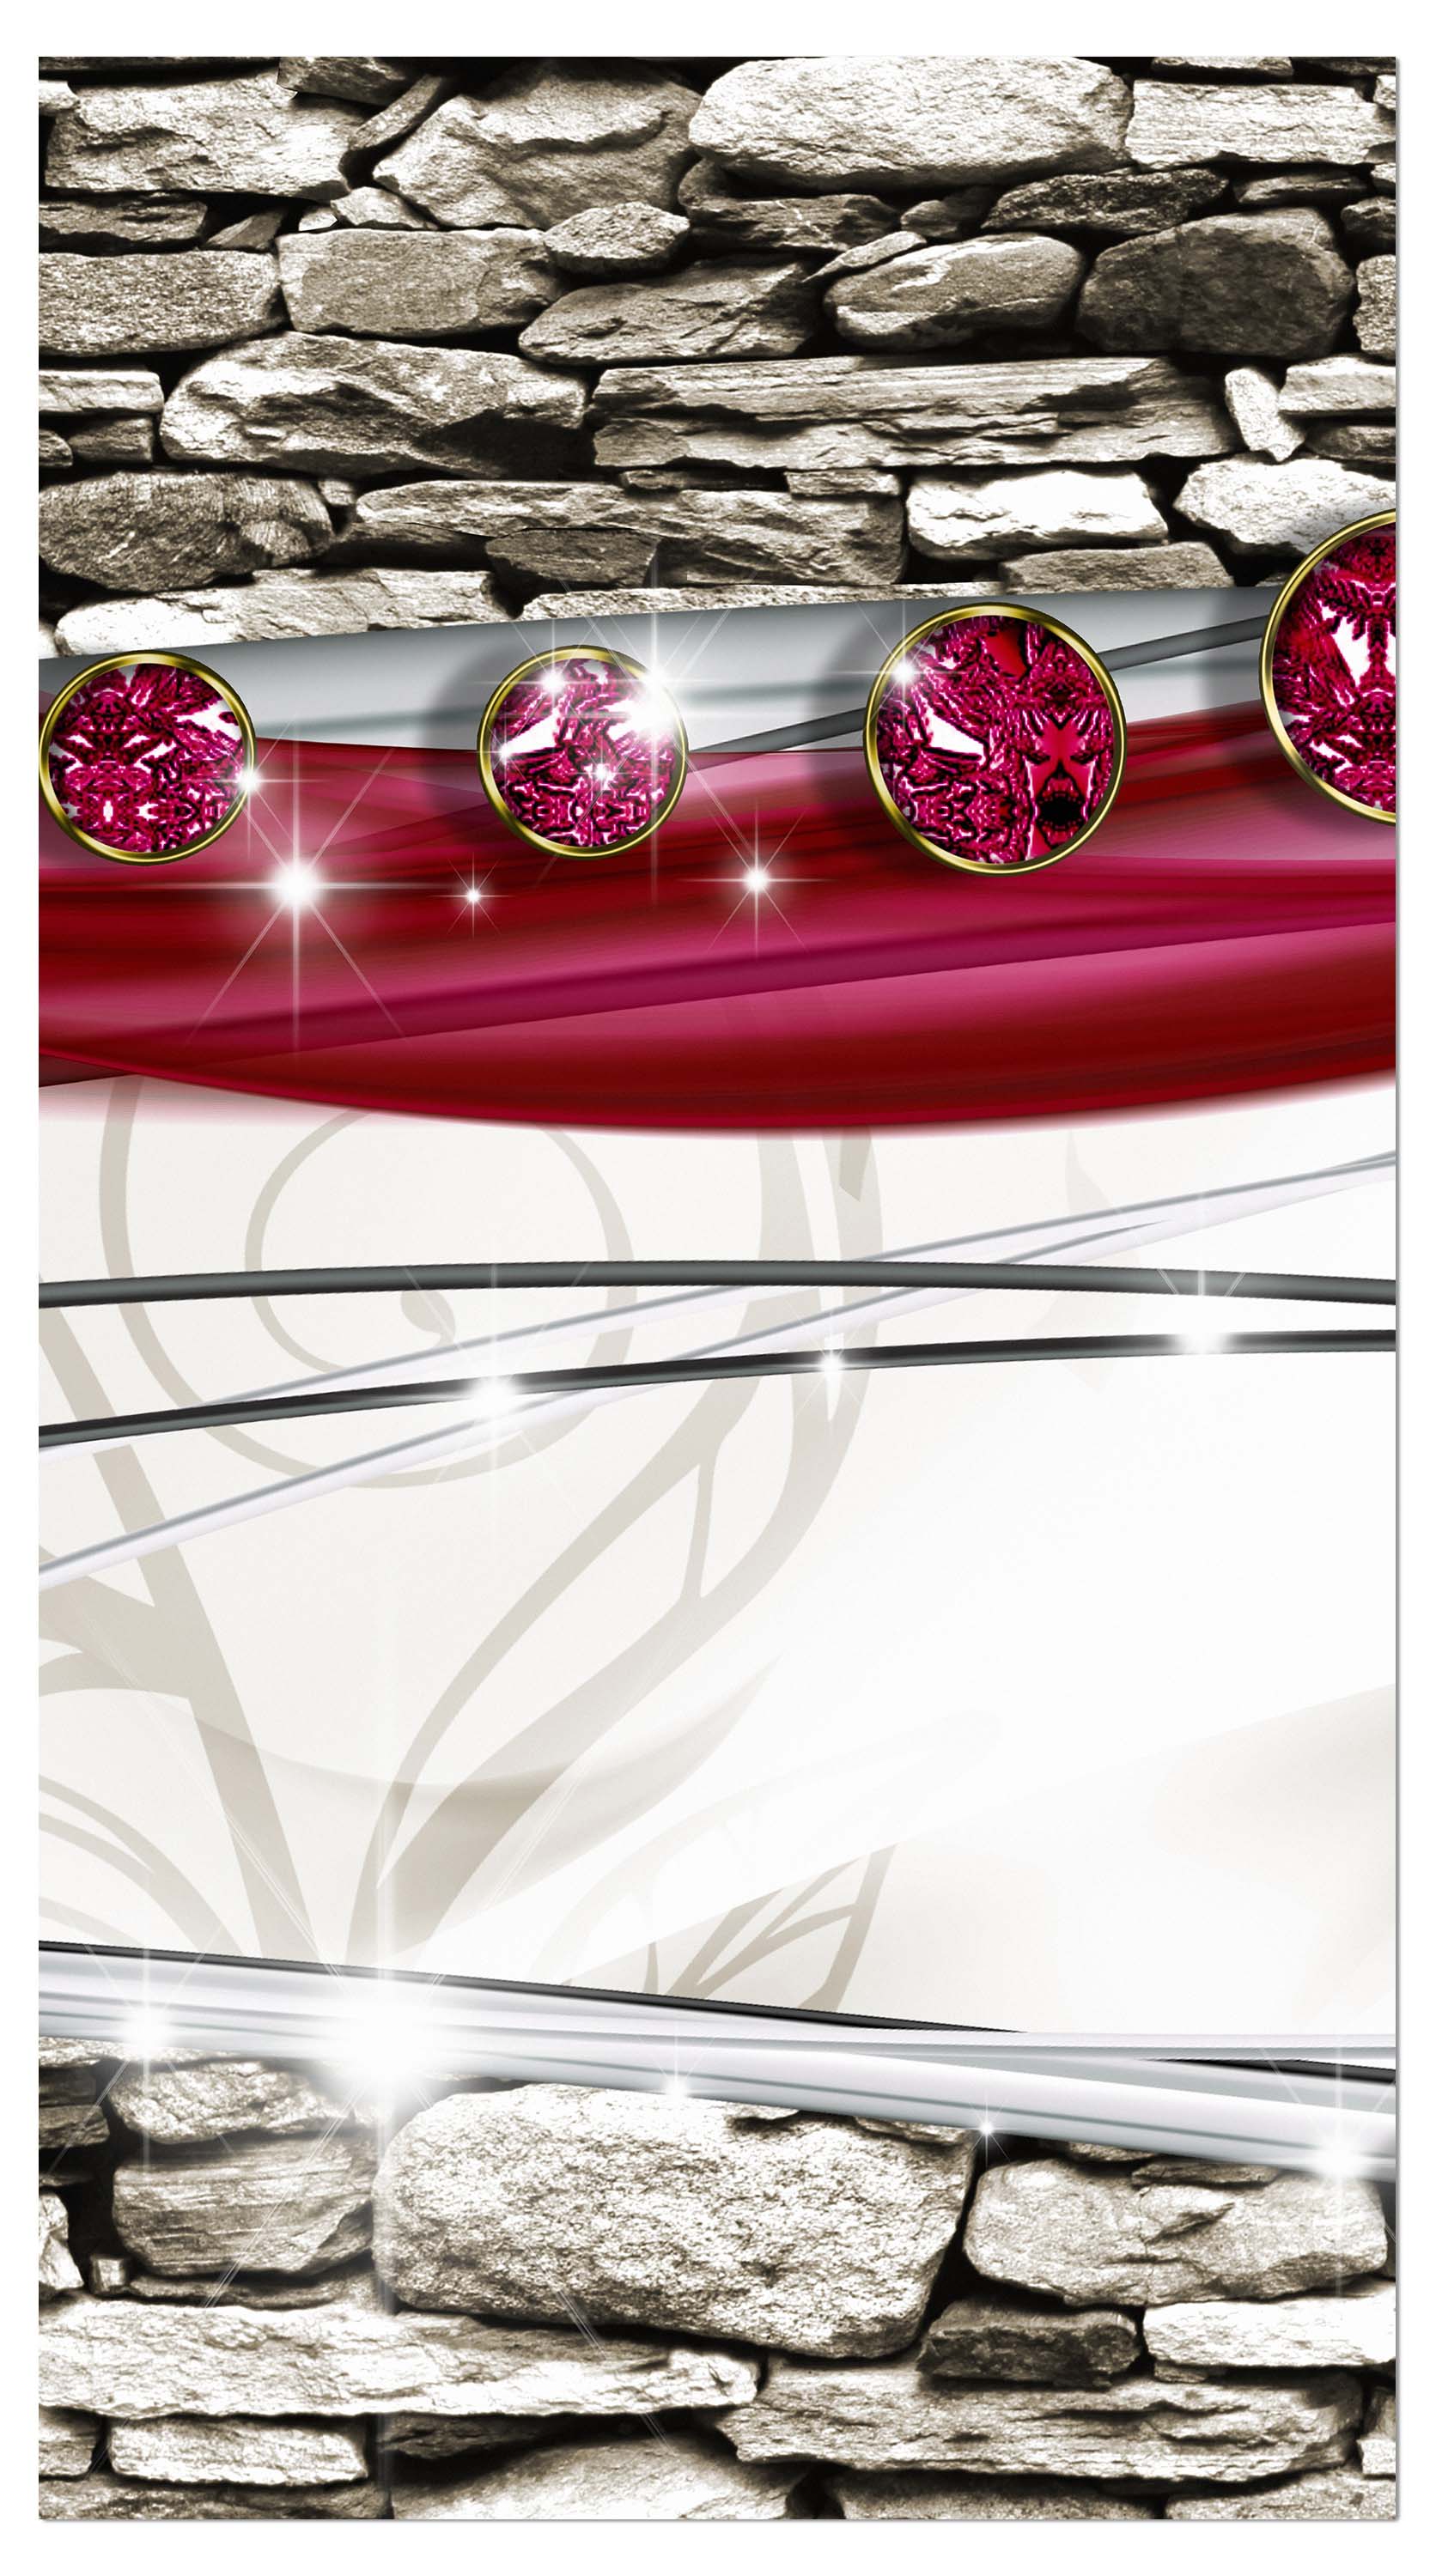 Garderobe Diamant Asia Steine Klinker M0537 entdecken - Bild 4